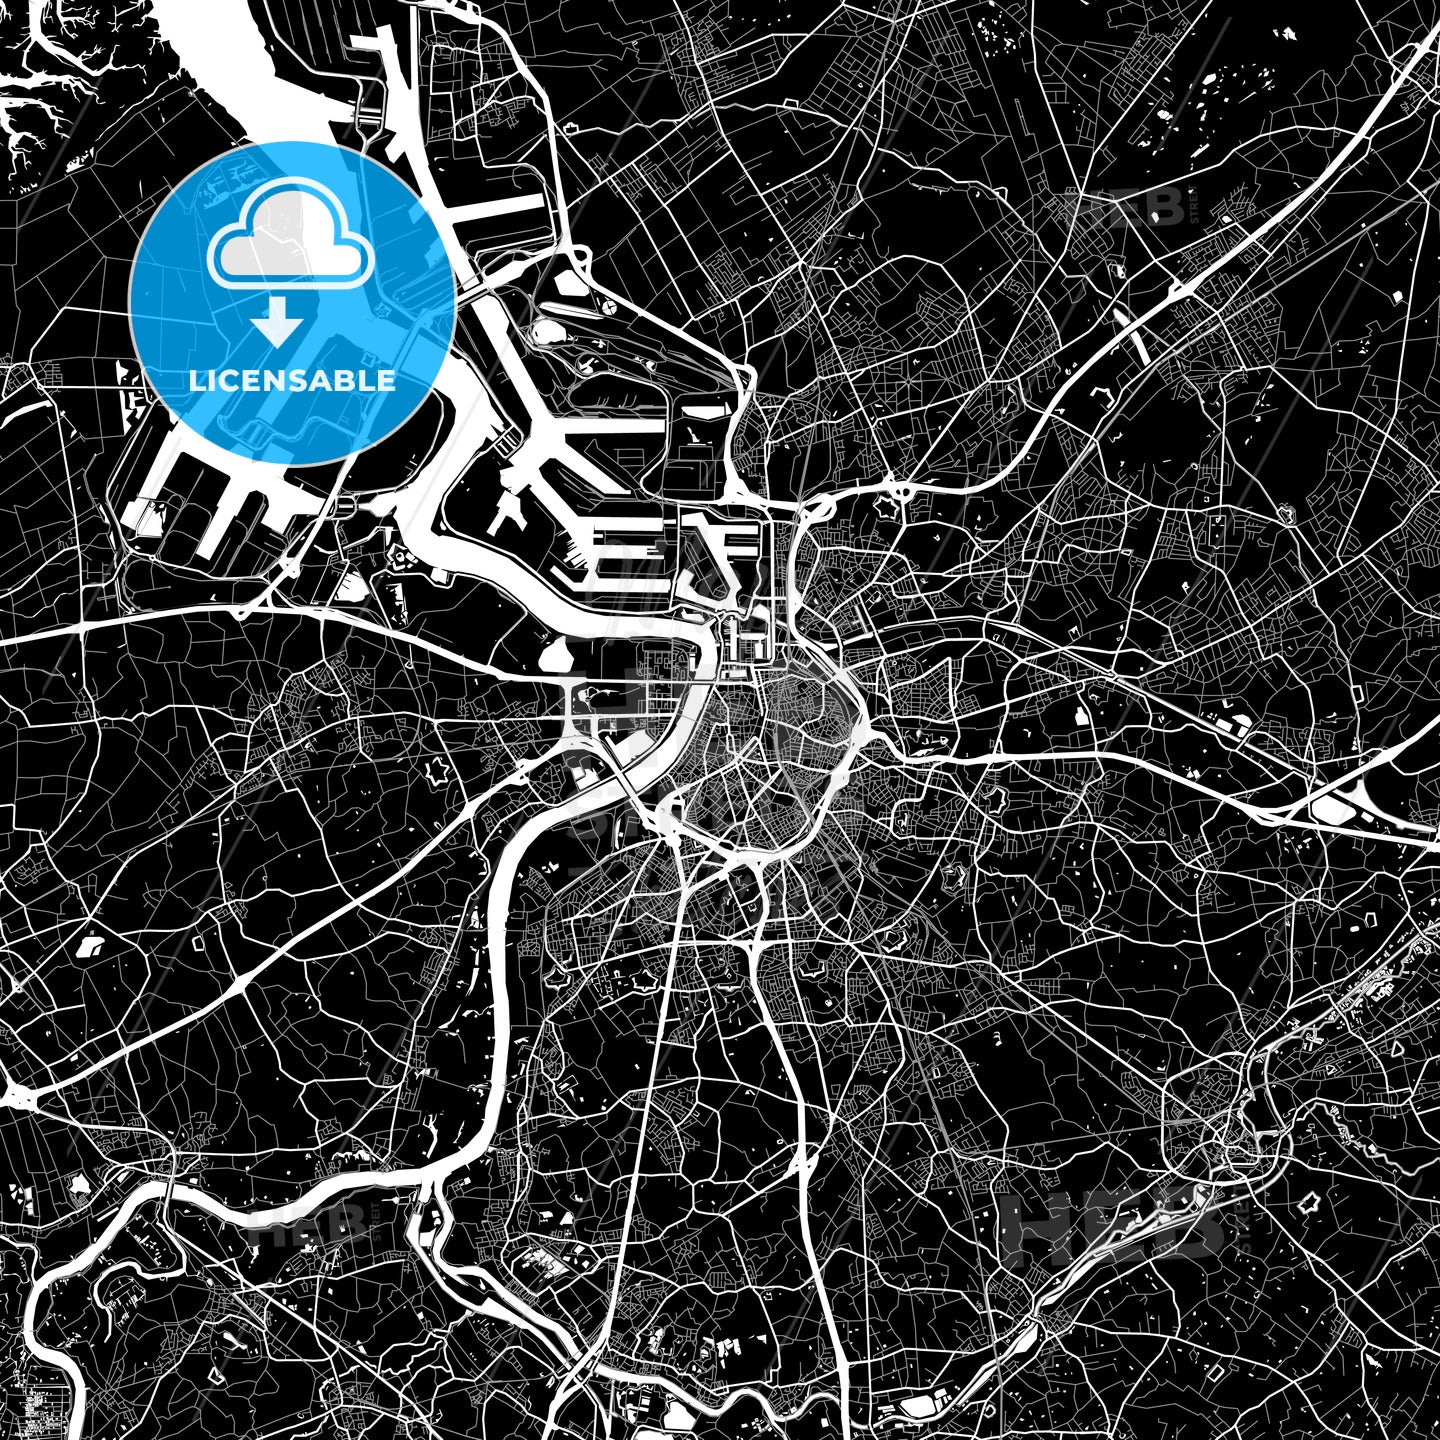 Antwerp, Belgium map